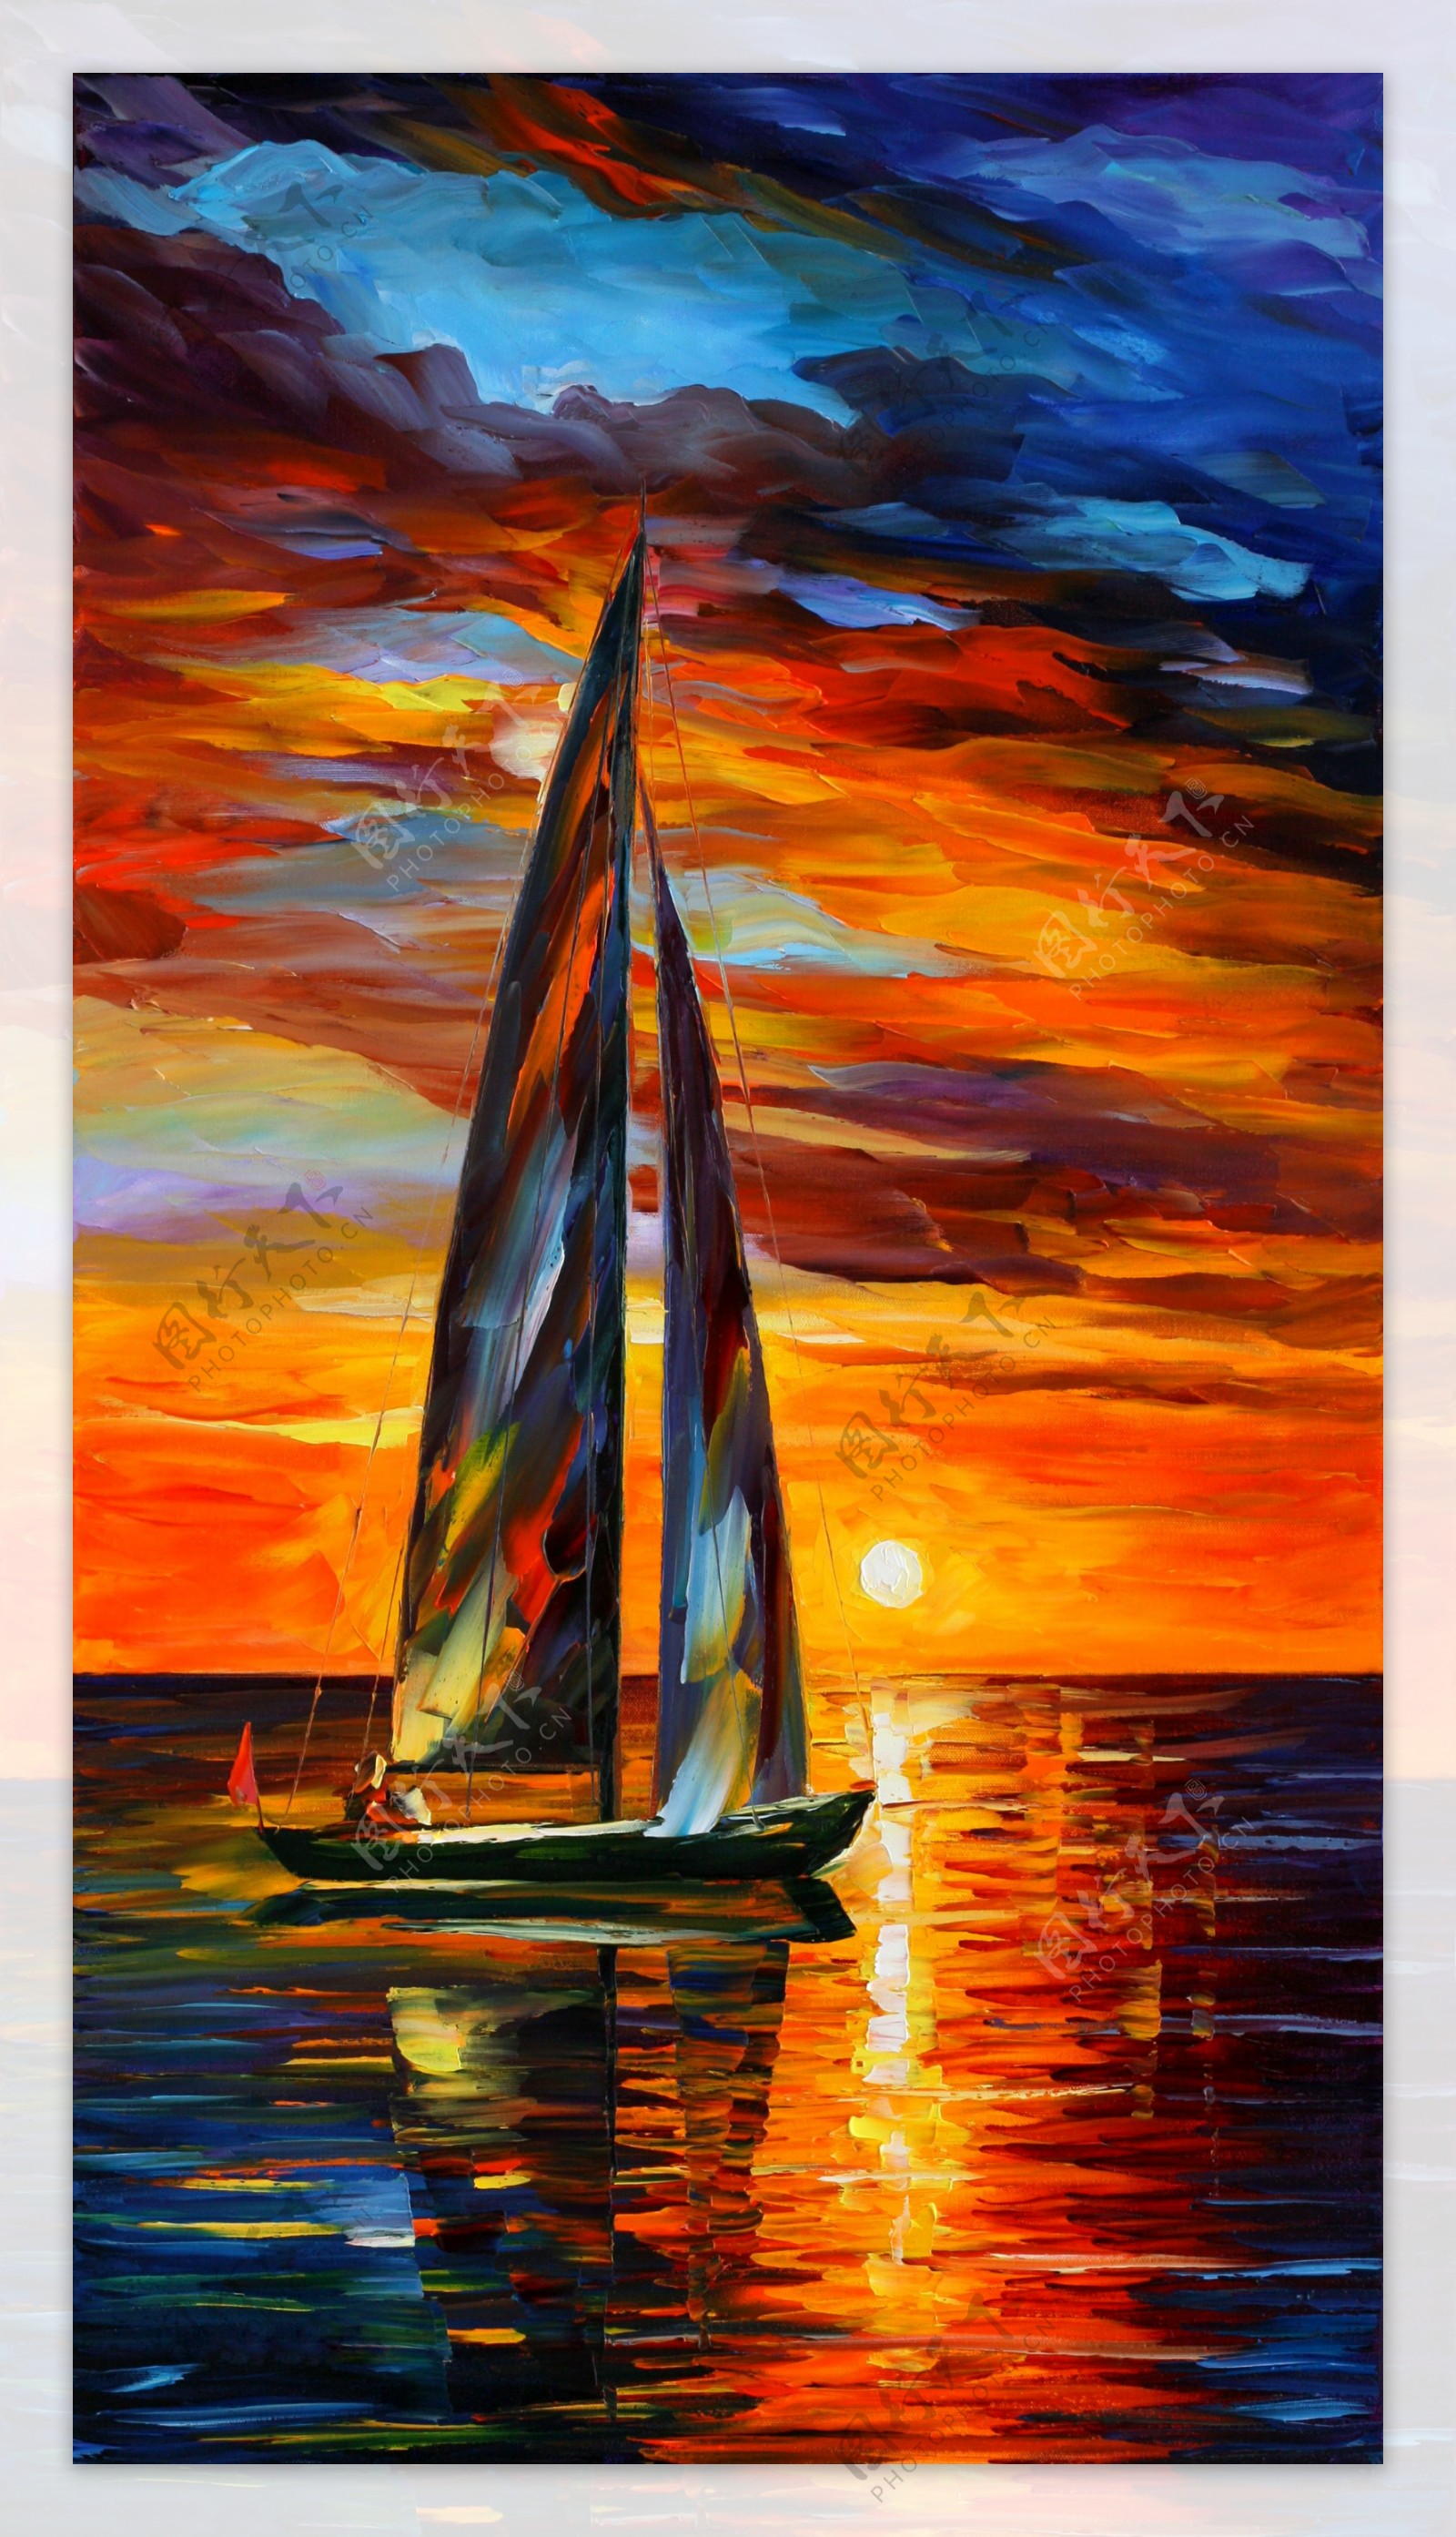 油画夕阳帆船图片